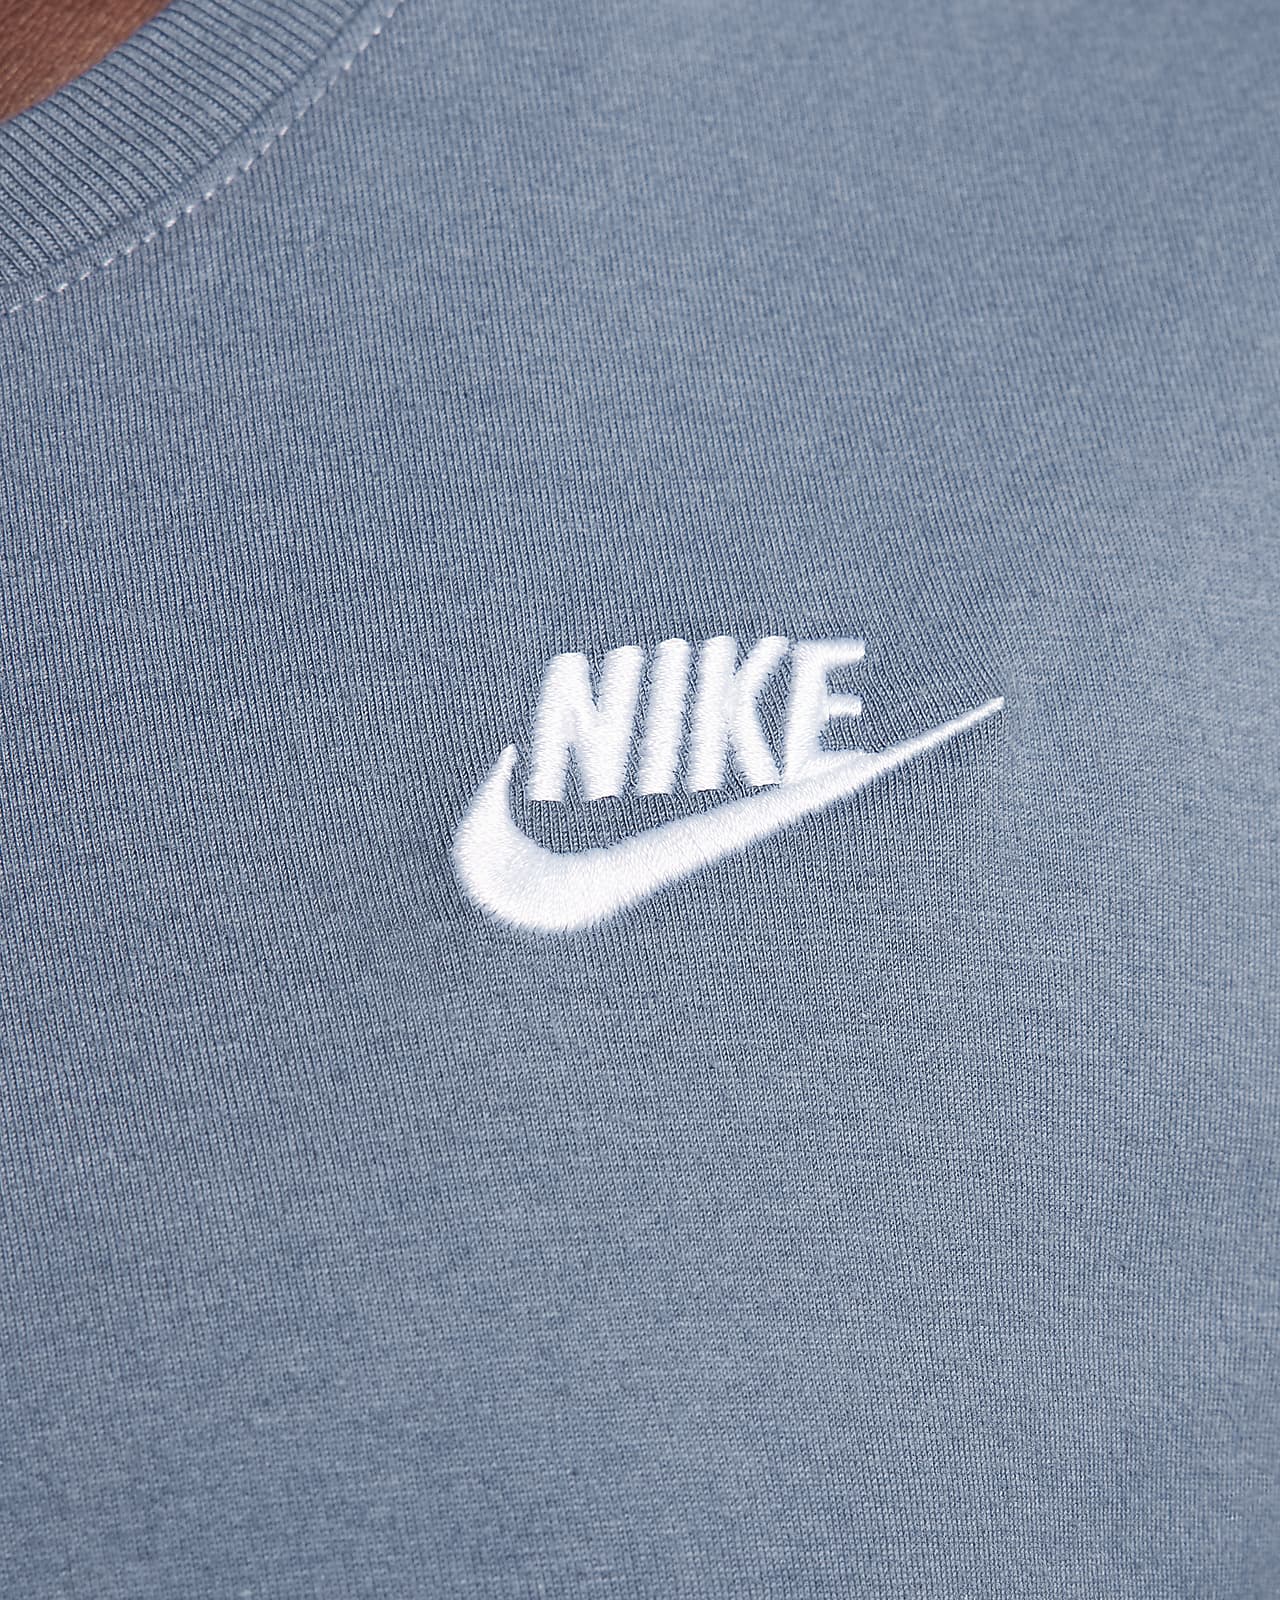 Nike T-Shirt Femme - Sportswear Club Essentials - blanc DX7902-100